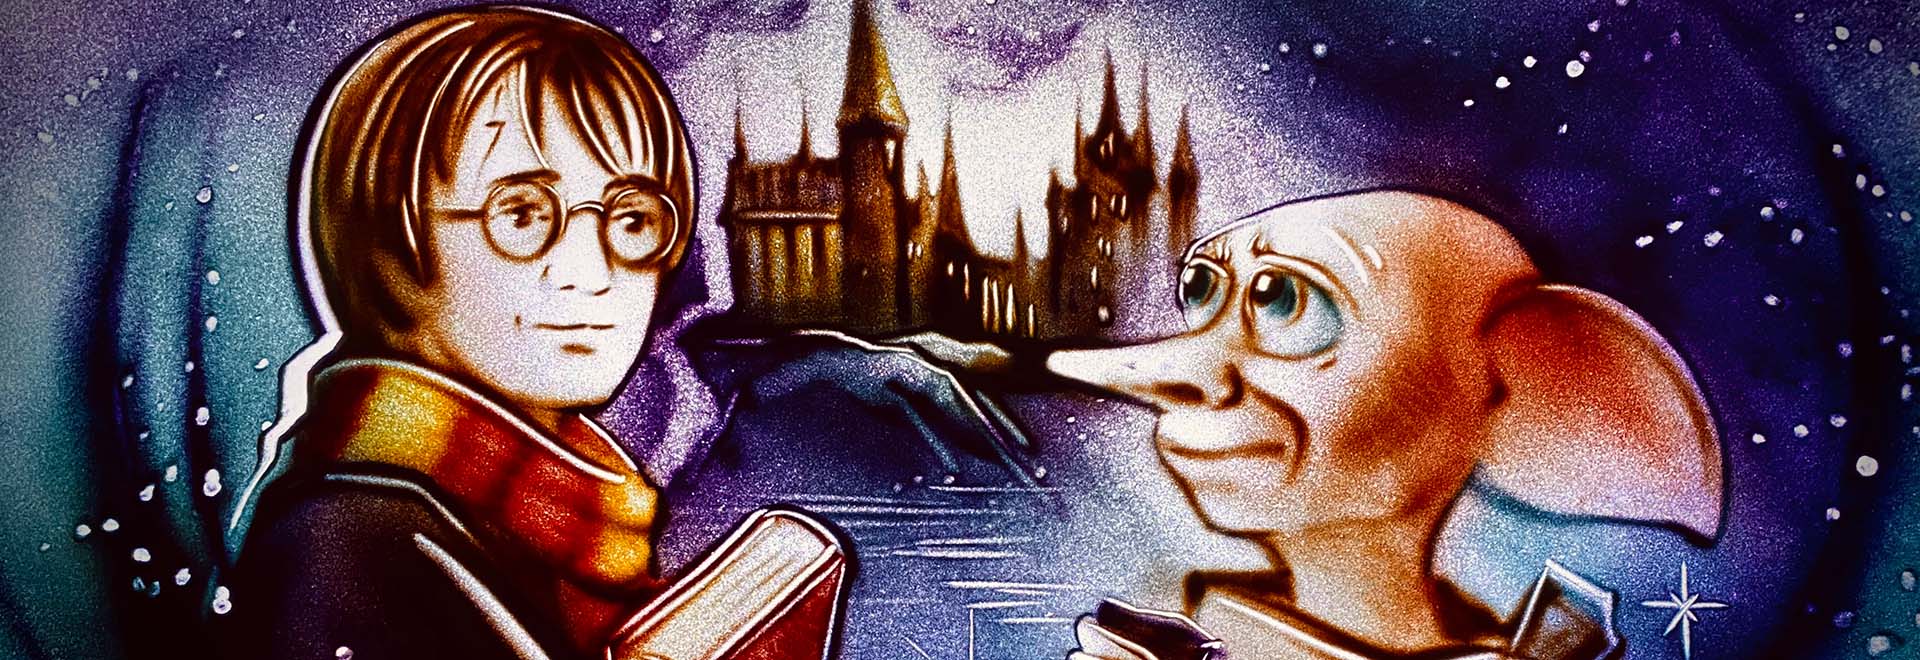 Музыкальный мир фэнтези: Гарри Поттер